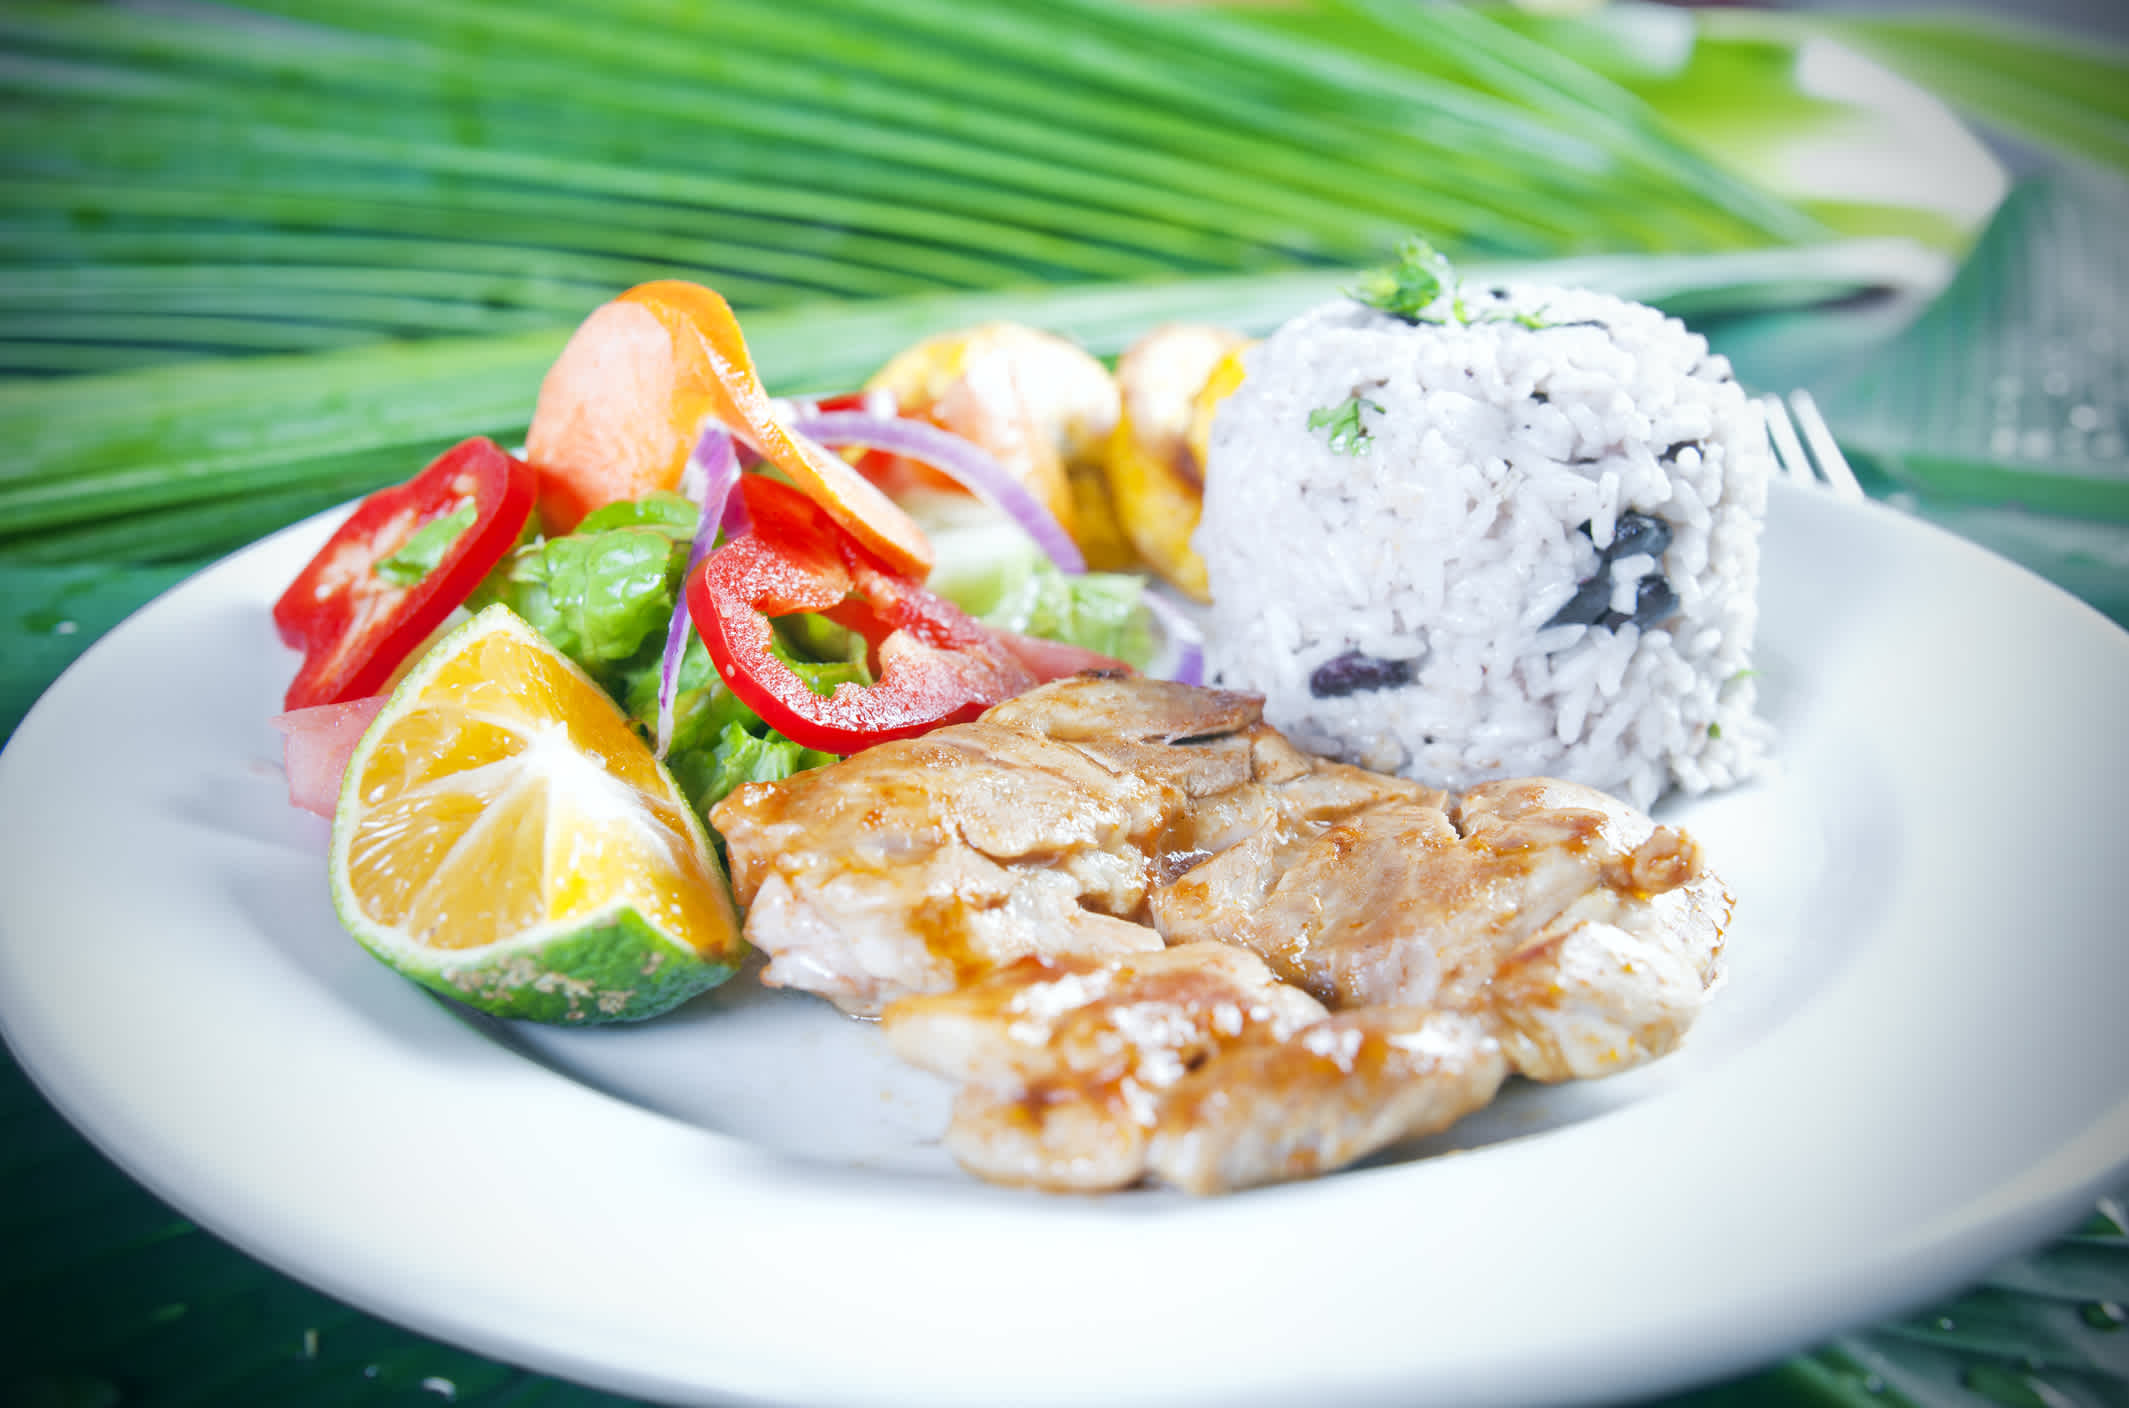 Casado de poisson, repas traditionnel costaricien.

